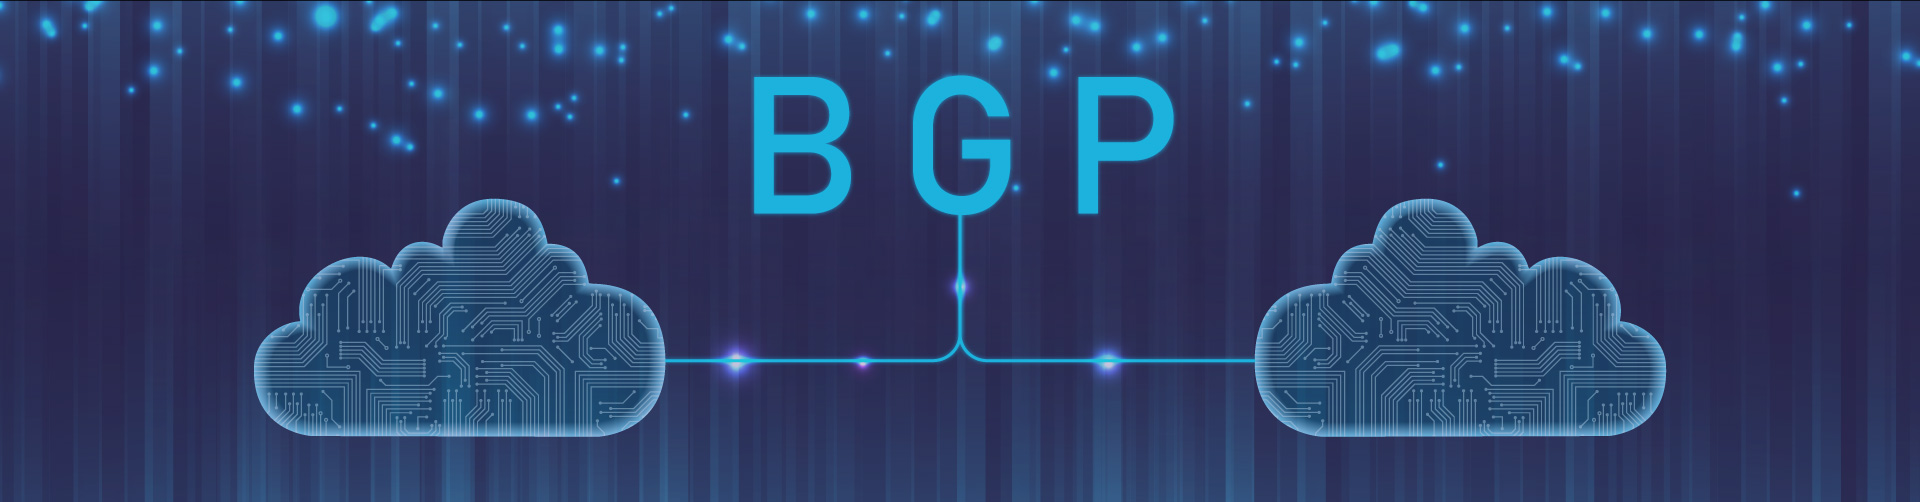 BGP (Border Gateway Protocol): ¿Qué es y cómo funciona?